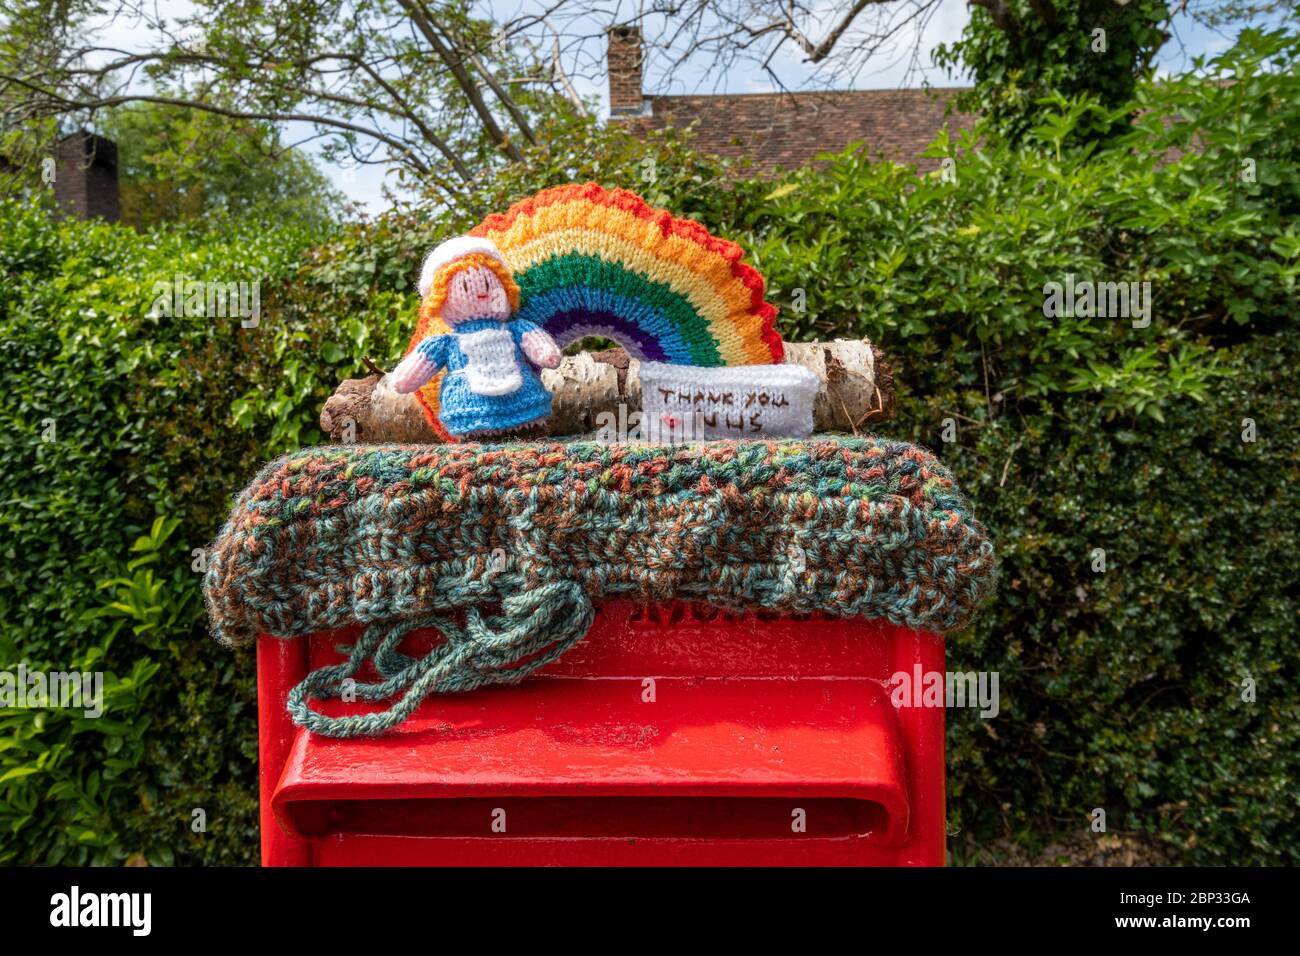 Personaggio lavorato a maglia che rappresenta un'infermiera in cima a una scatola postale nel villaggio di West End, Surrey, Regno Unito, durante la pandemia del 2020 del coronavirus covid-19 Foto Stock